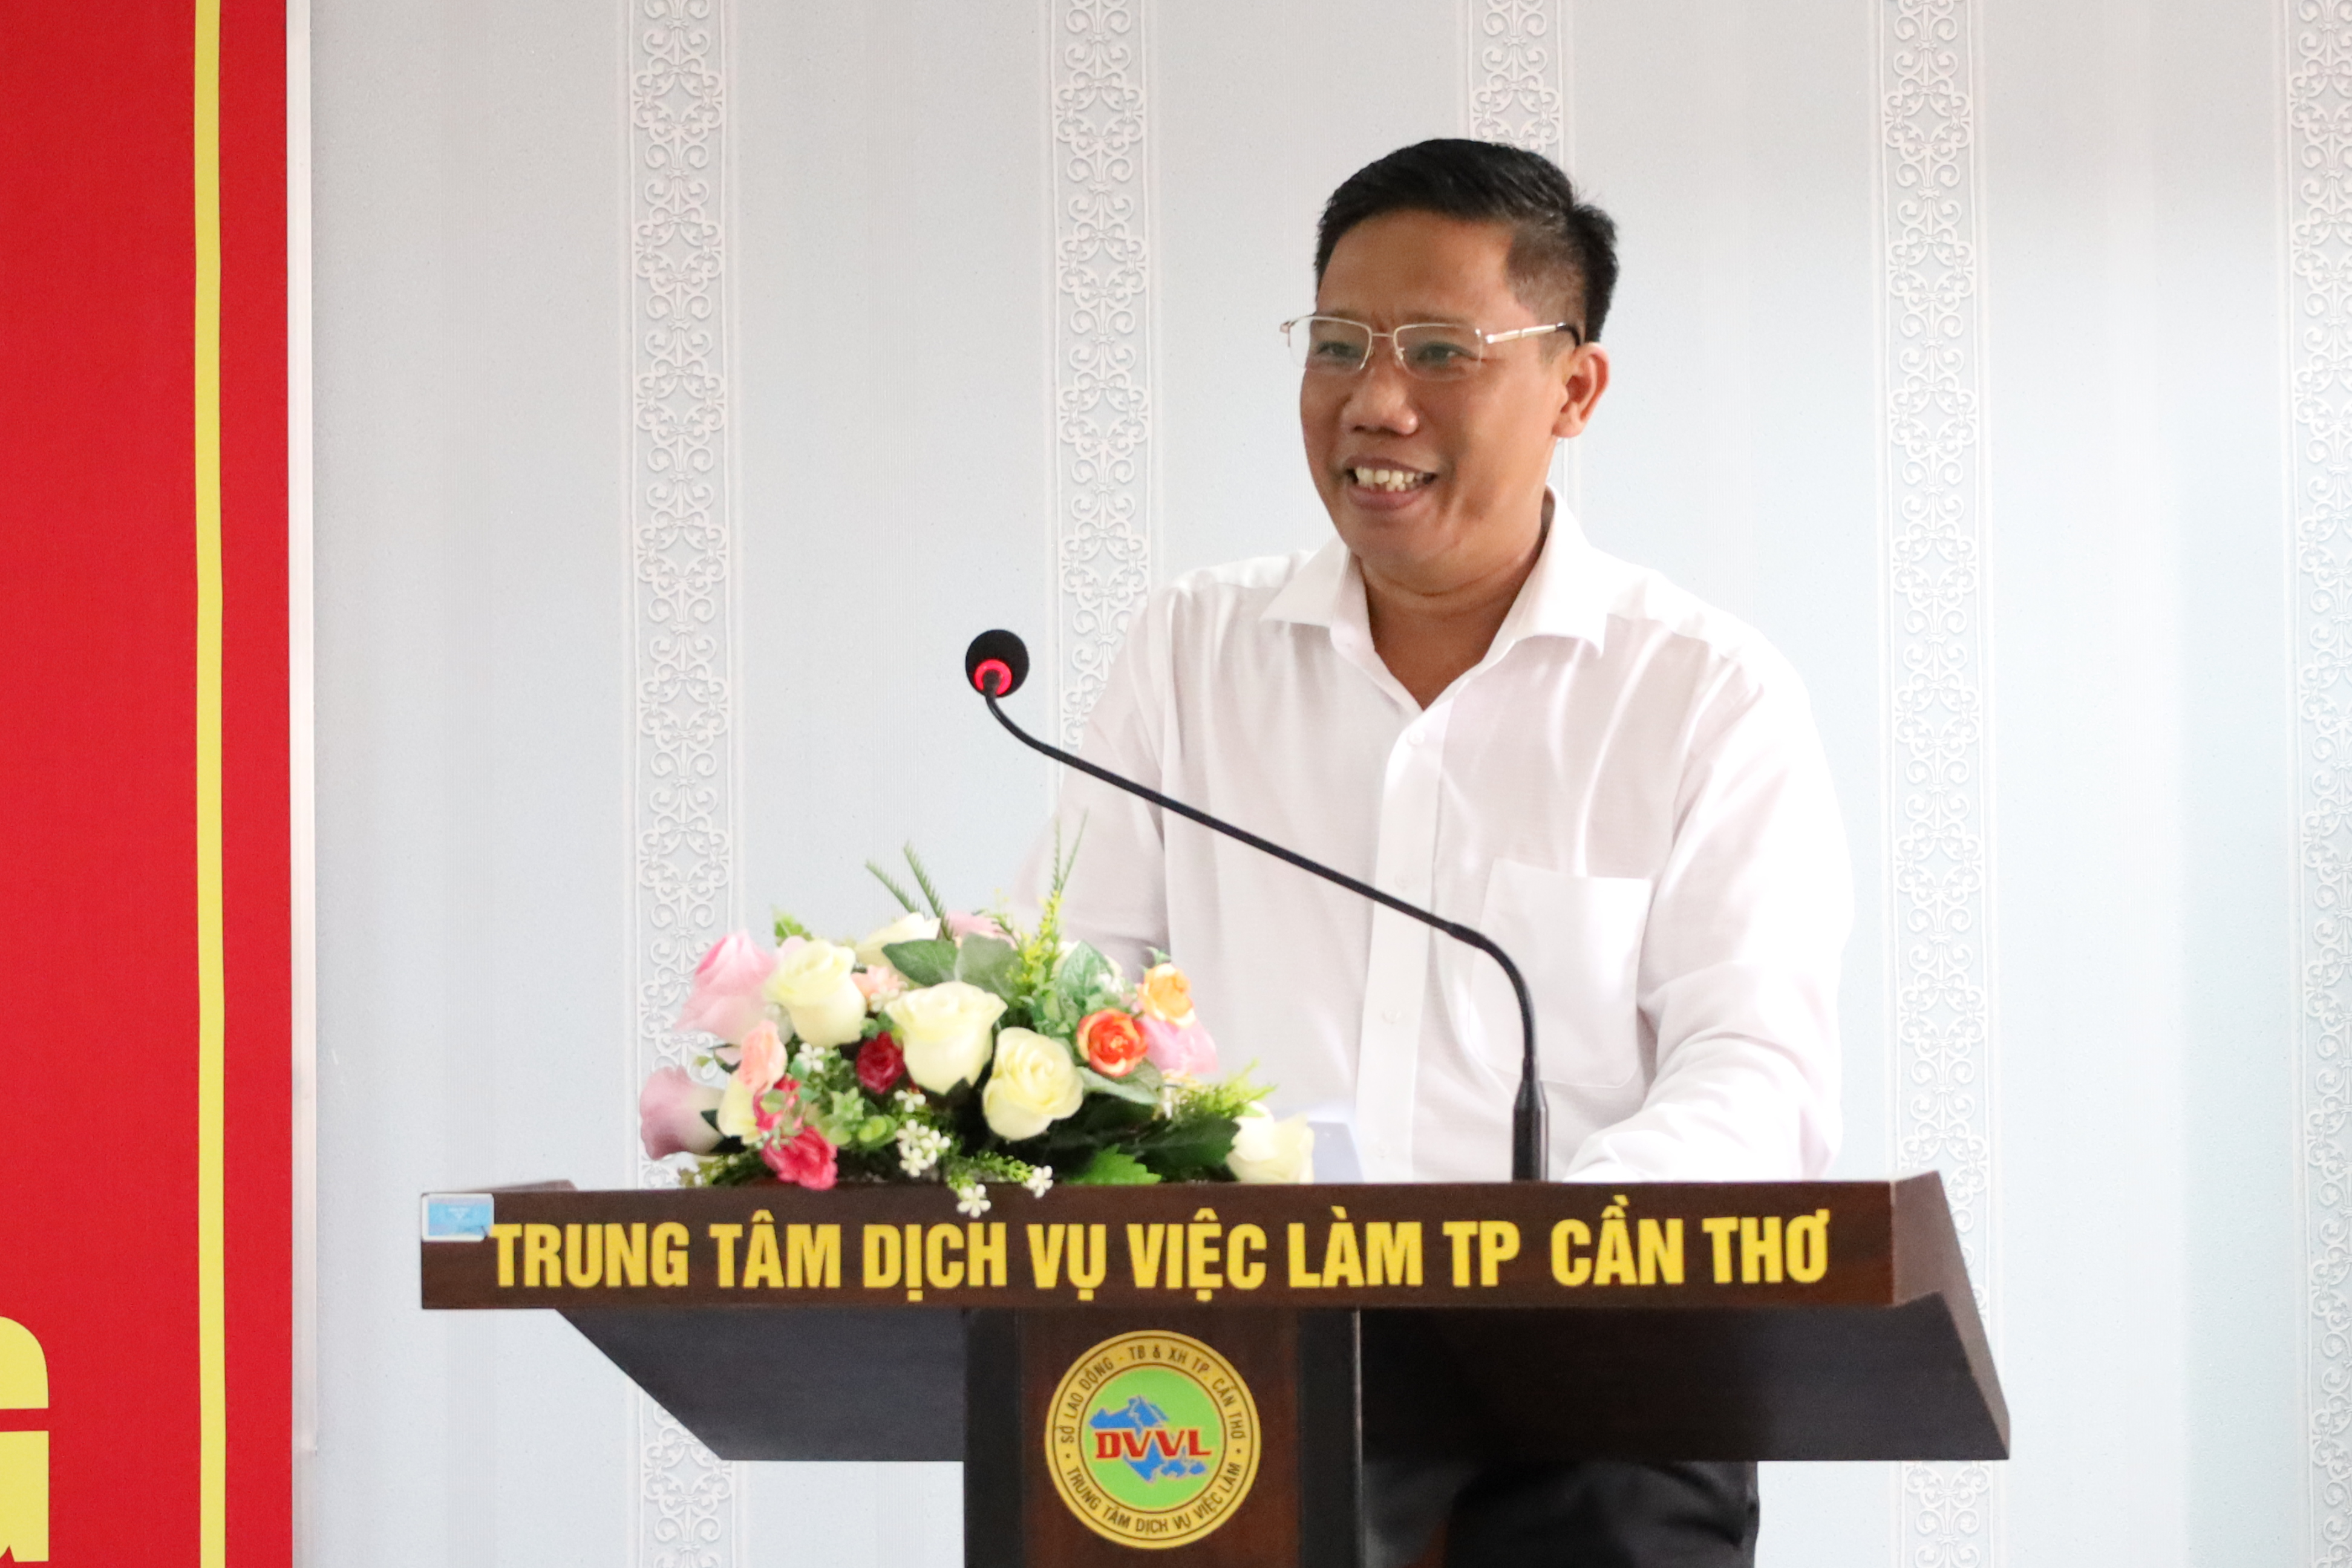 Ông Nguyễn Thực Hiện - Thành ủy viên, Phó Chủ tịch UBND TP. Cần Thơ phát biểu tại lễ trao quà.